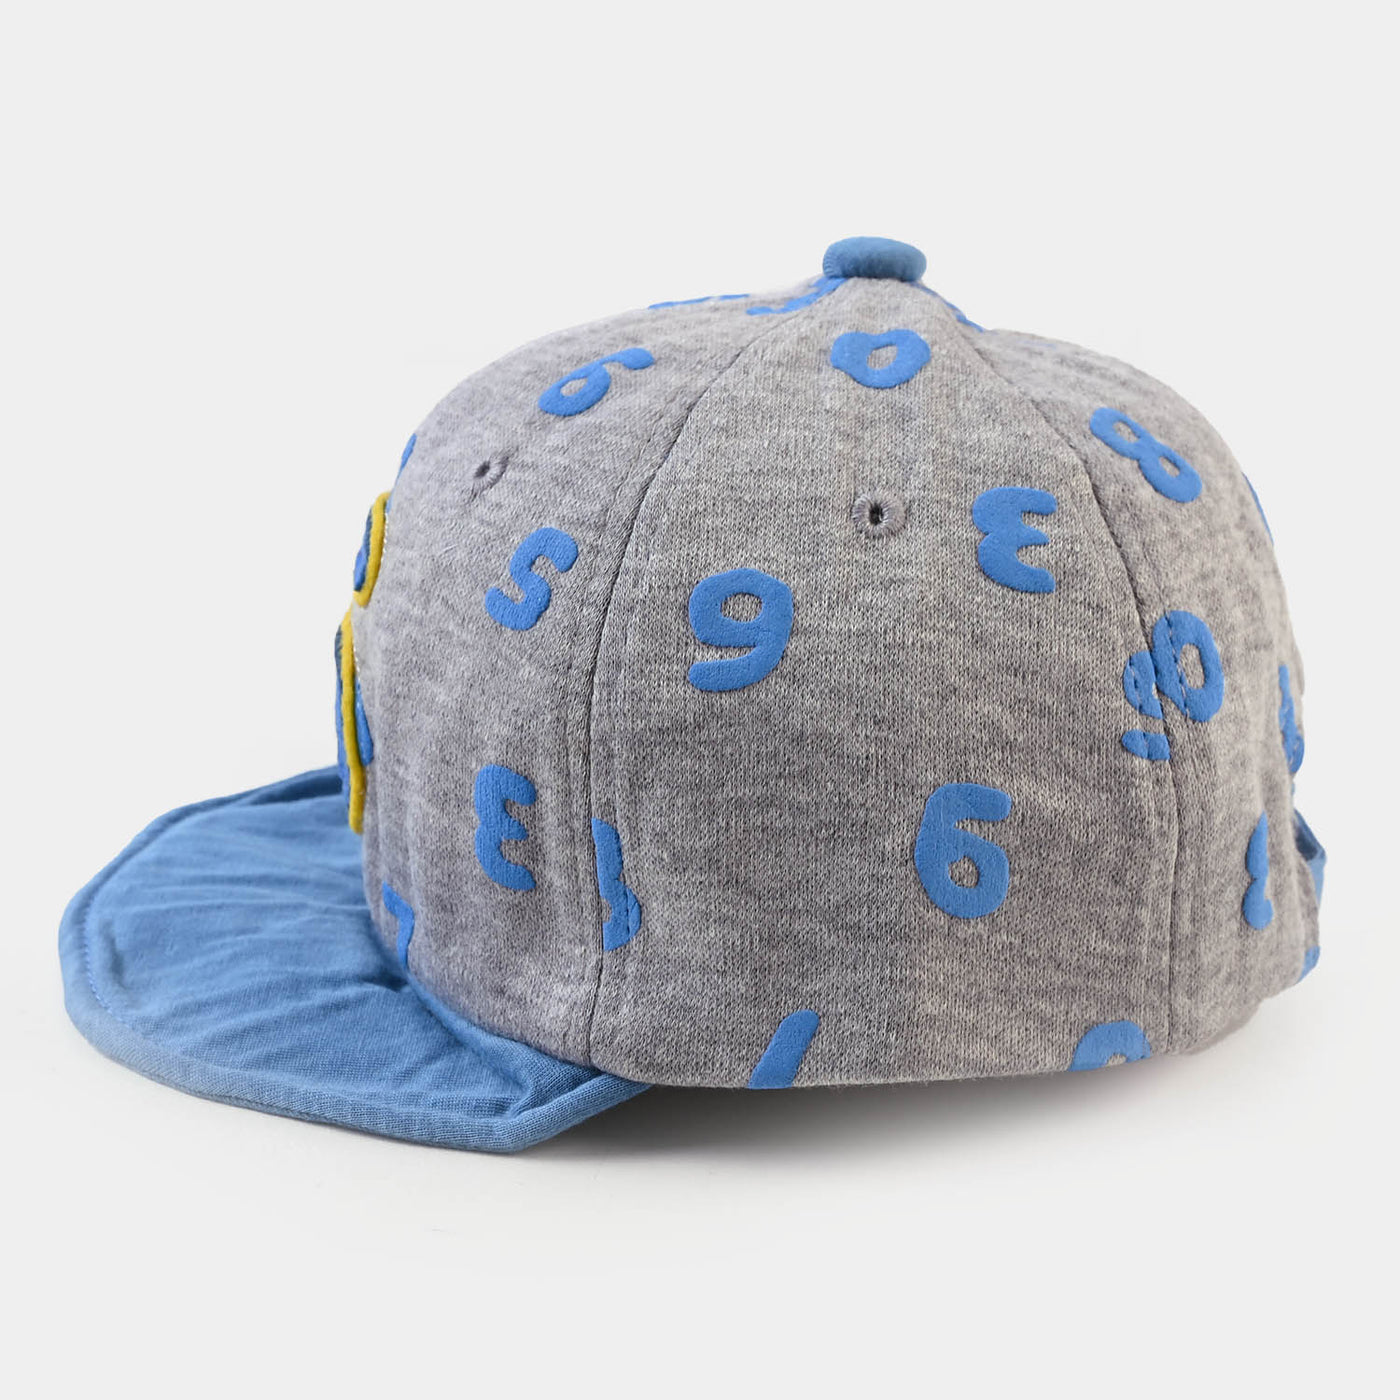 BABY ROUND CAP/HAT 12 MONTH +